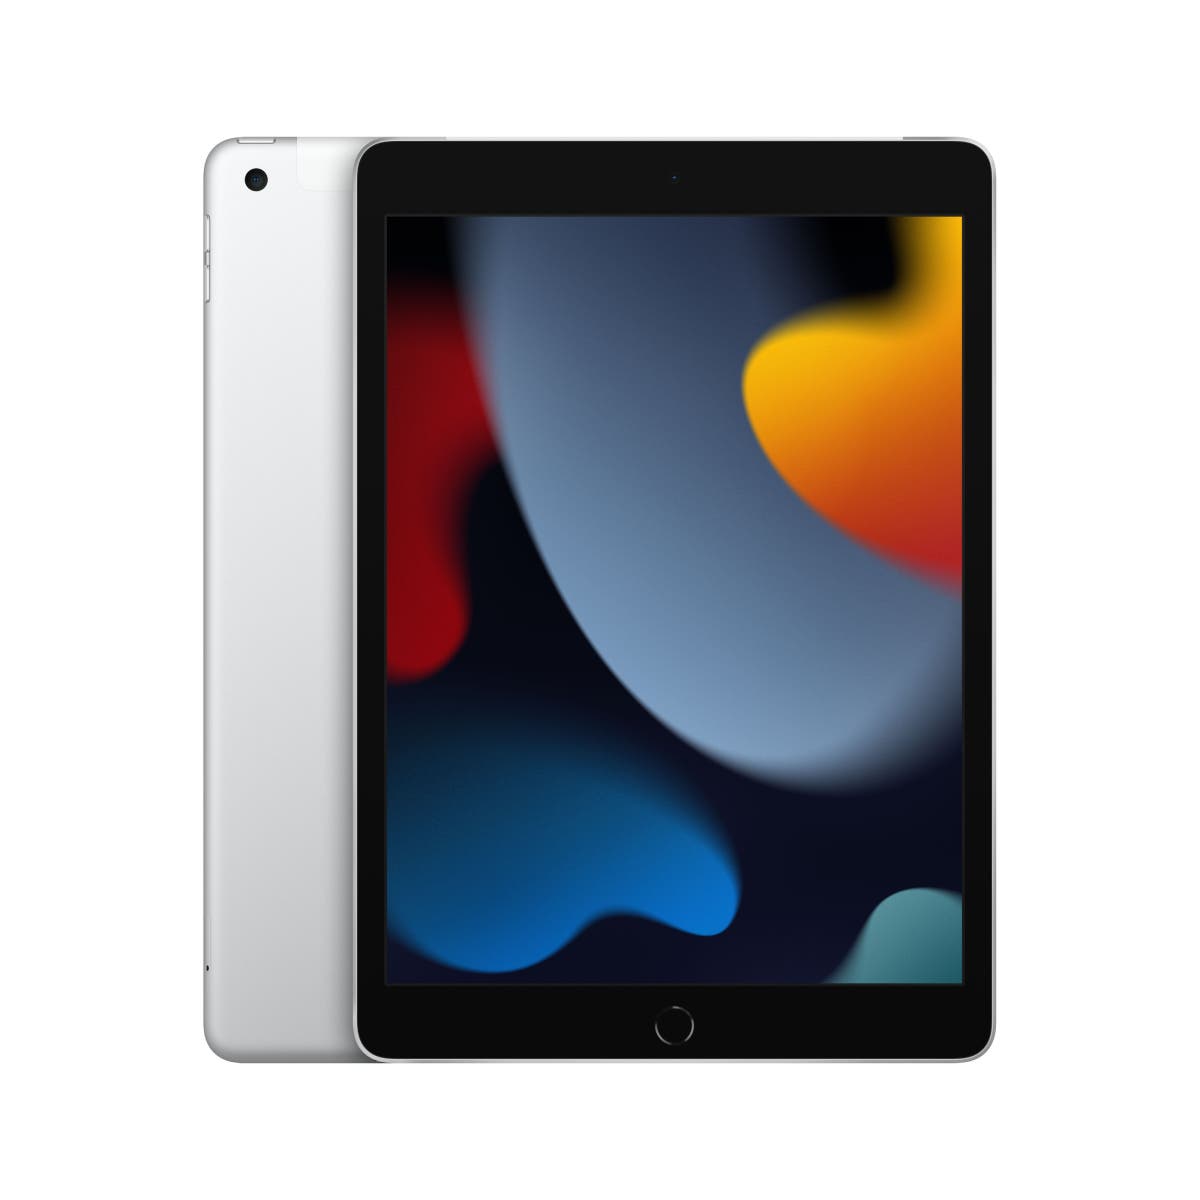 iPad 10.2-inch (9th gen) Wi-Fi + Cellular 256GB - Space Grey/Silver